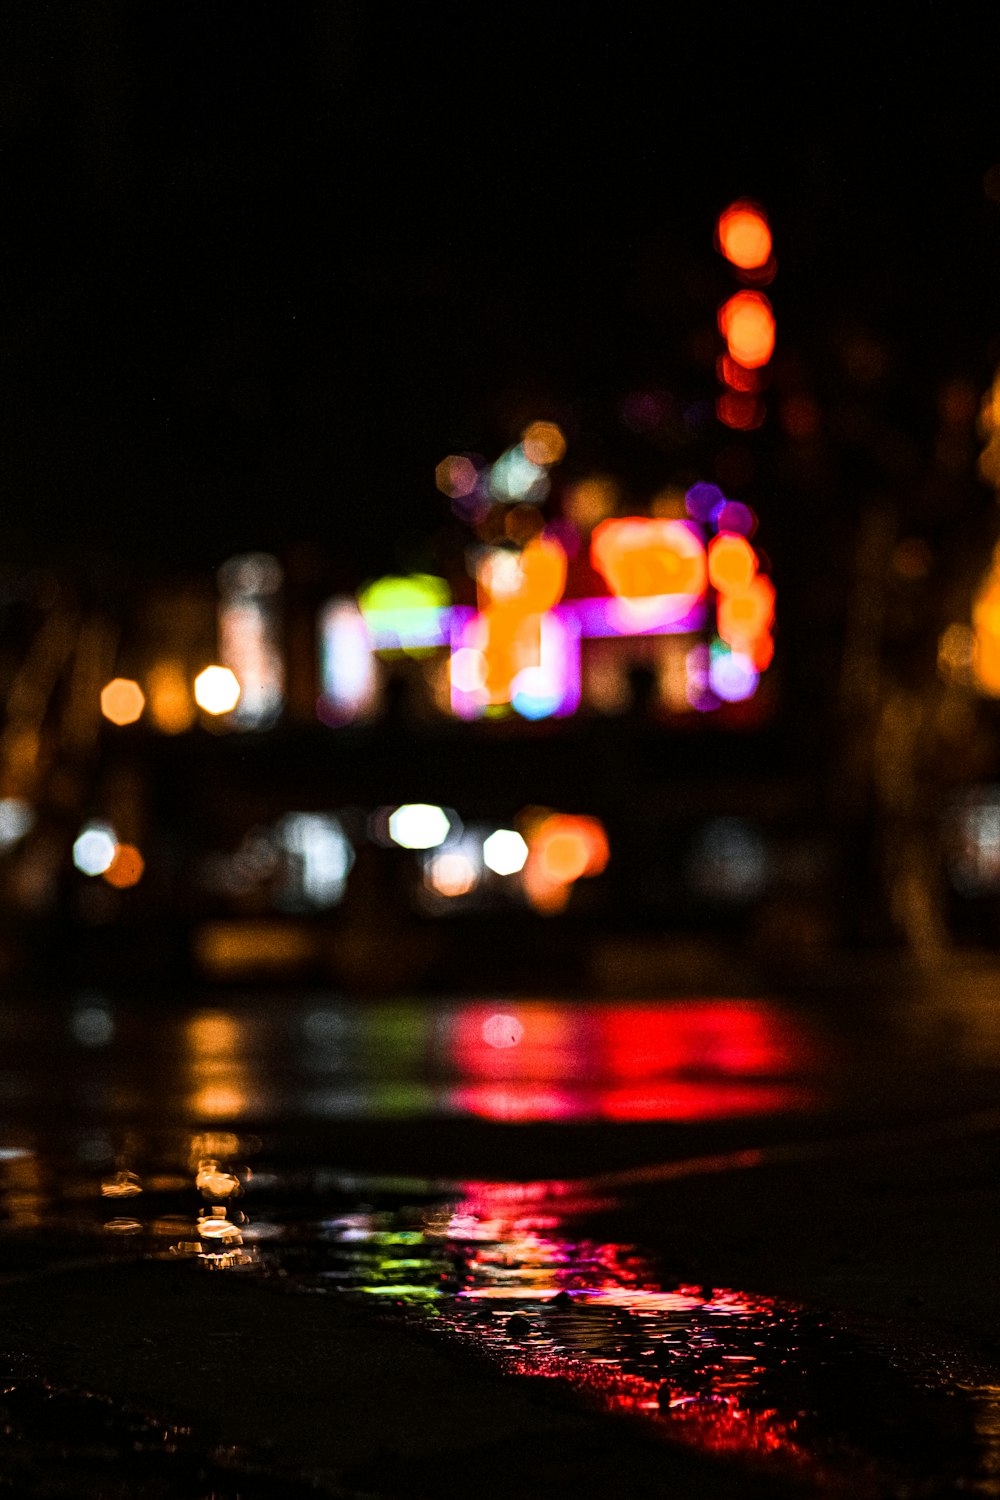 Ánh đèn thành phố đêm tuyệt đẹp và lộng lẫy như cơn mơ. Hãy chiêm ngưỡng vẻ đẹp lãng mạn của thành phố với hàng ngàn đèn đuốc lung linh. Bức tranh đêm thành phố vô cùng đẹp mắt và cuốn hút bất cứ ai một lần được tận mắt chứng kiến.